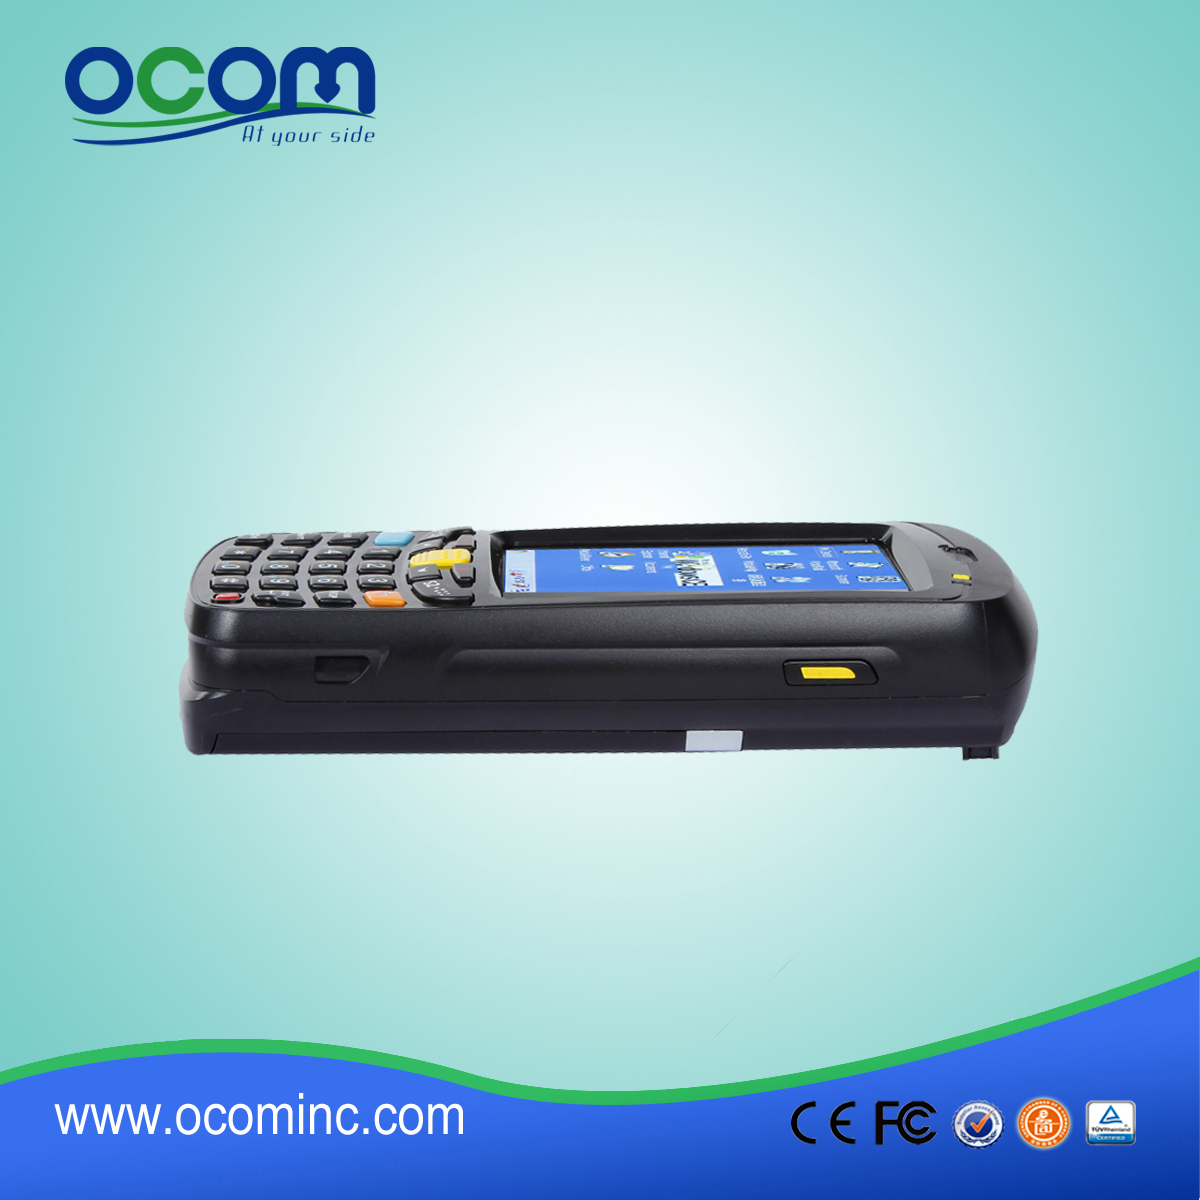 Supporto Win CE di raccolta dati con scanner RFID Reader (OCB-D008)